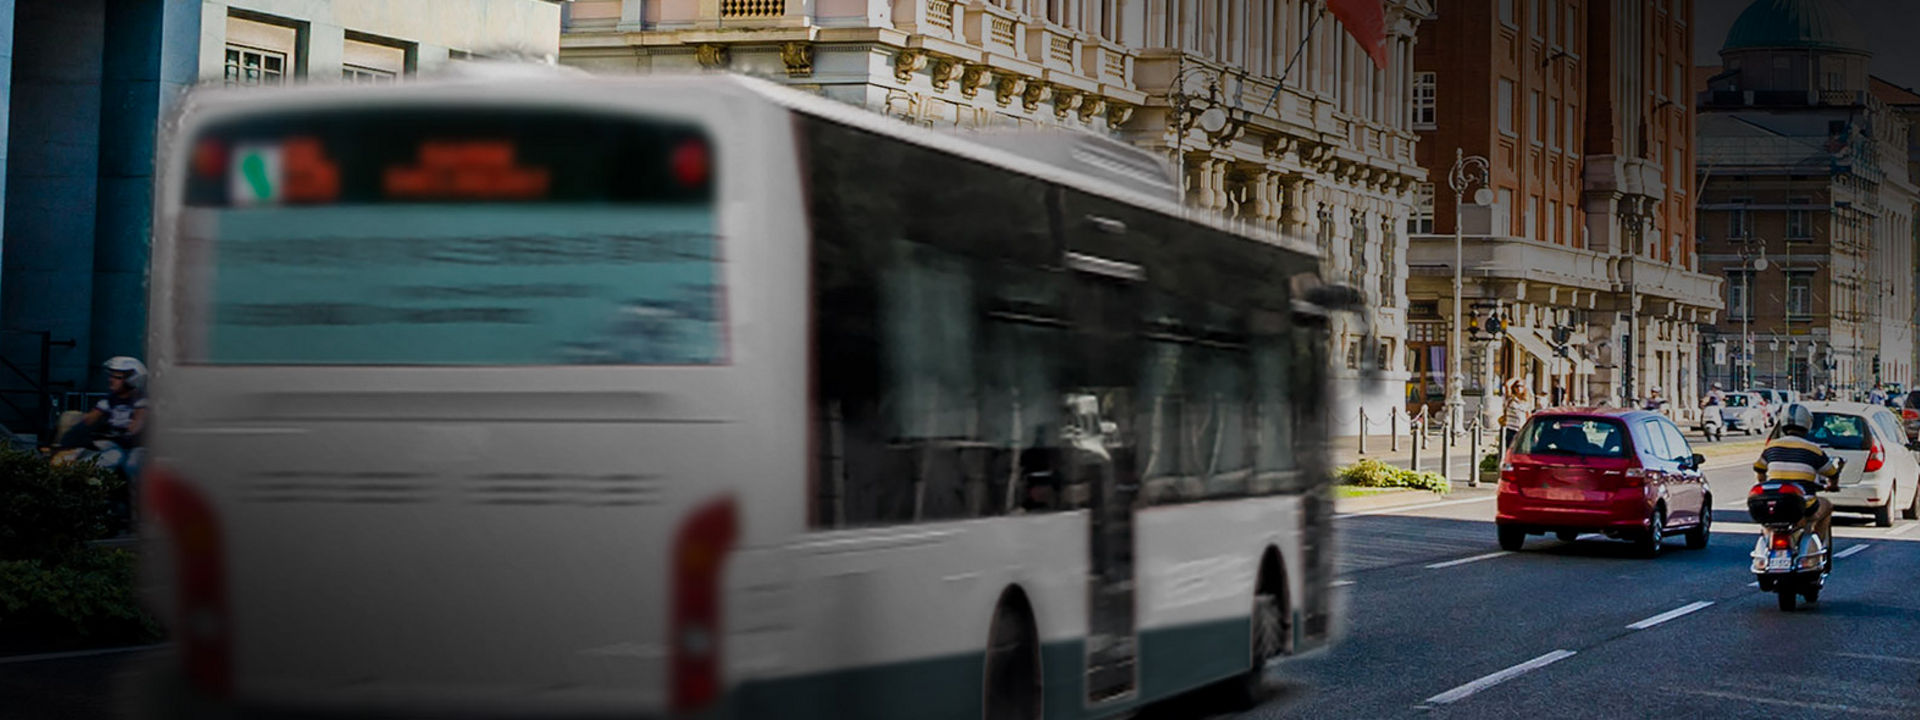 Αυτή η εικόνα δείχνει το πίσω μέρος ενός αστικού λεωφορείου με ελαστικά αστικών λεωφορείων Bridgestone να κινείται στο κέντρο της πόλης.